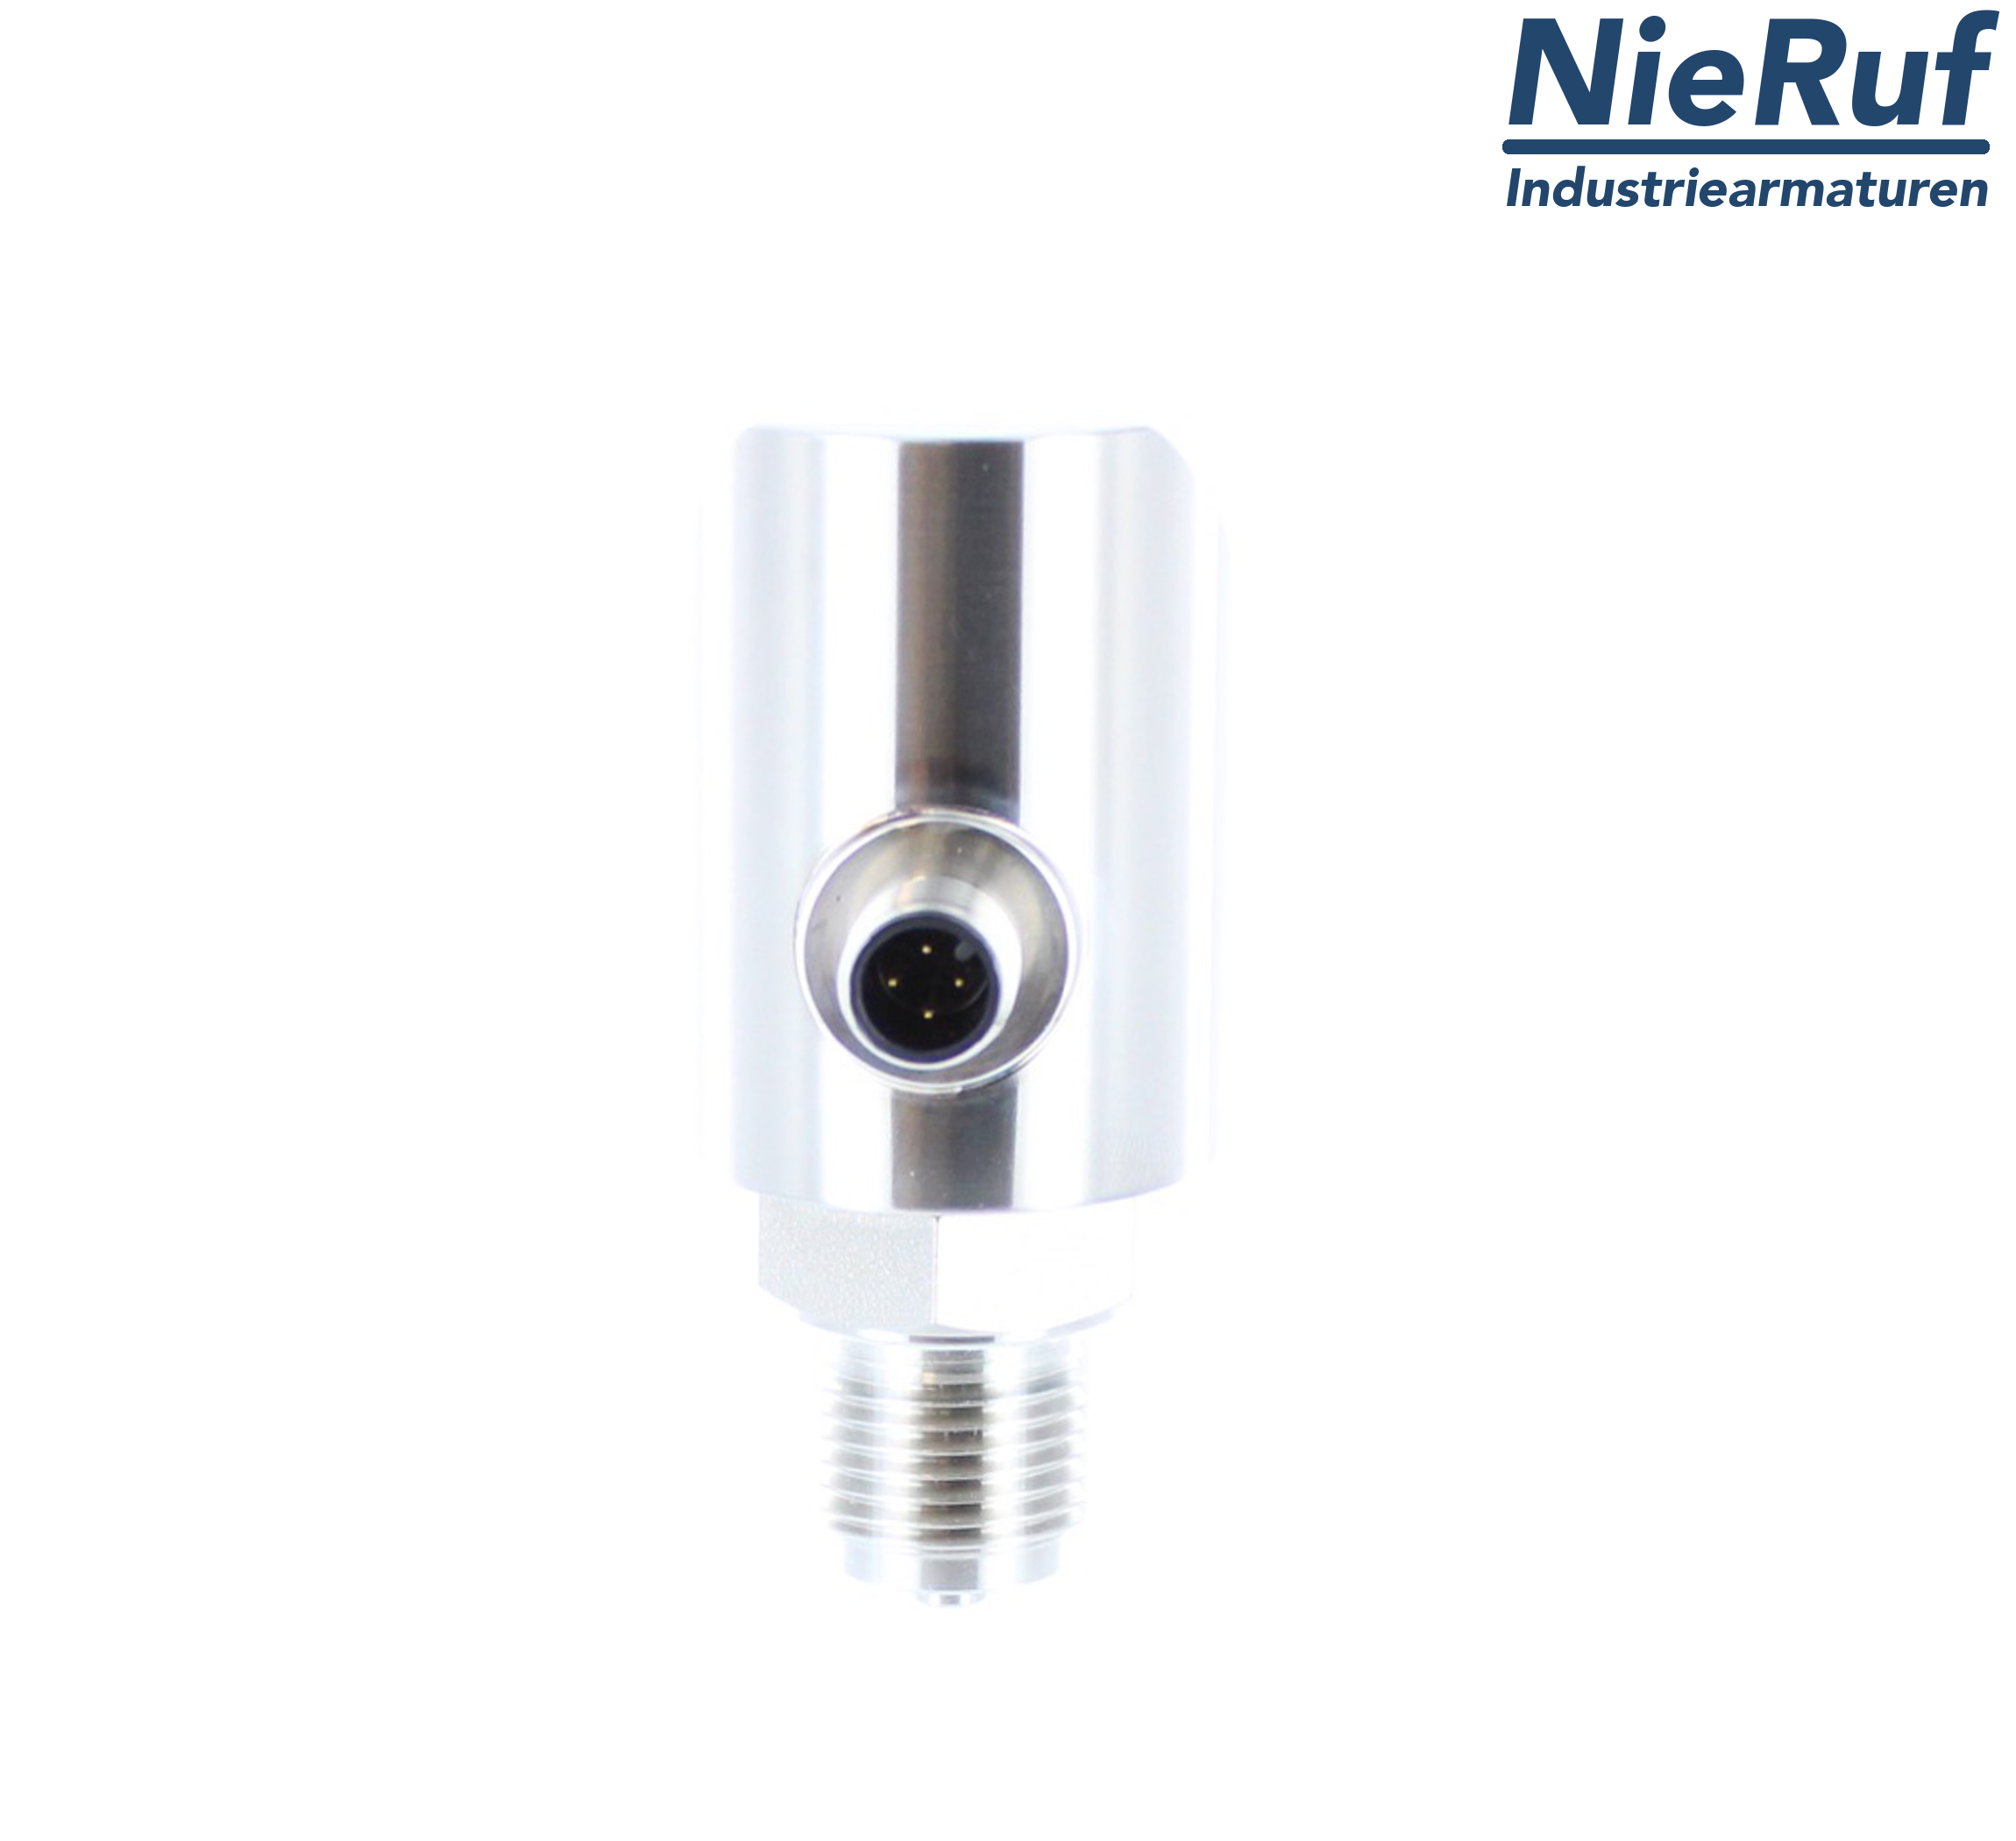 digital pressure sensor G 1/2" B 4-wire: 1xPNP, 1x4 - 20mA, Desina FPM 0,0 - 400,0 bar